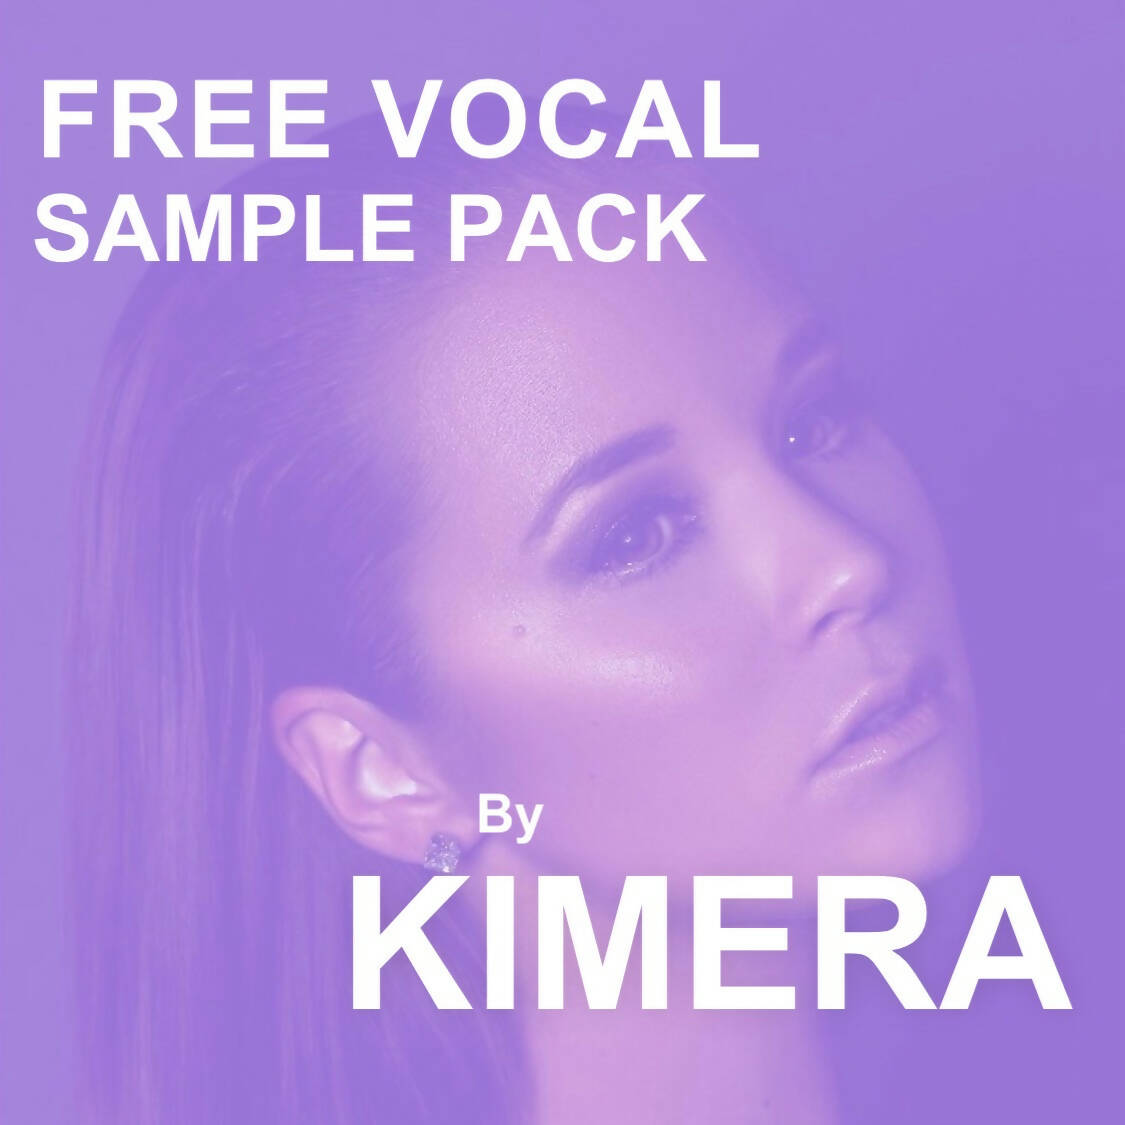 FREE Vocal Sample Pack - 128 BPM - D Major - Female